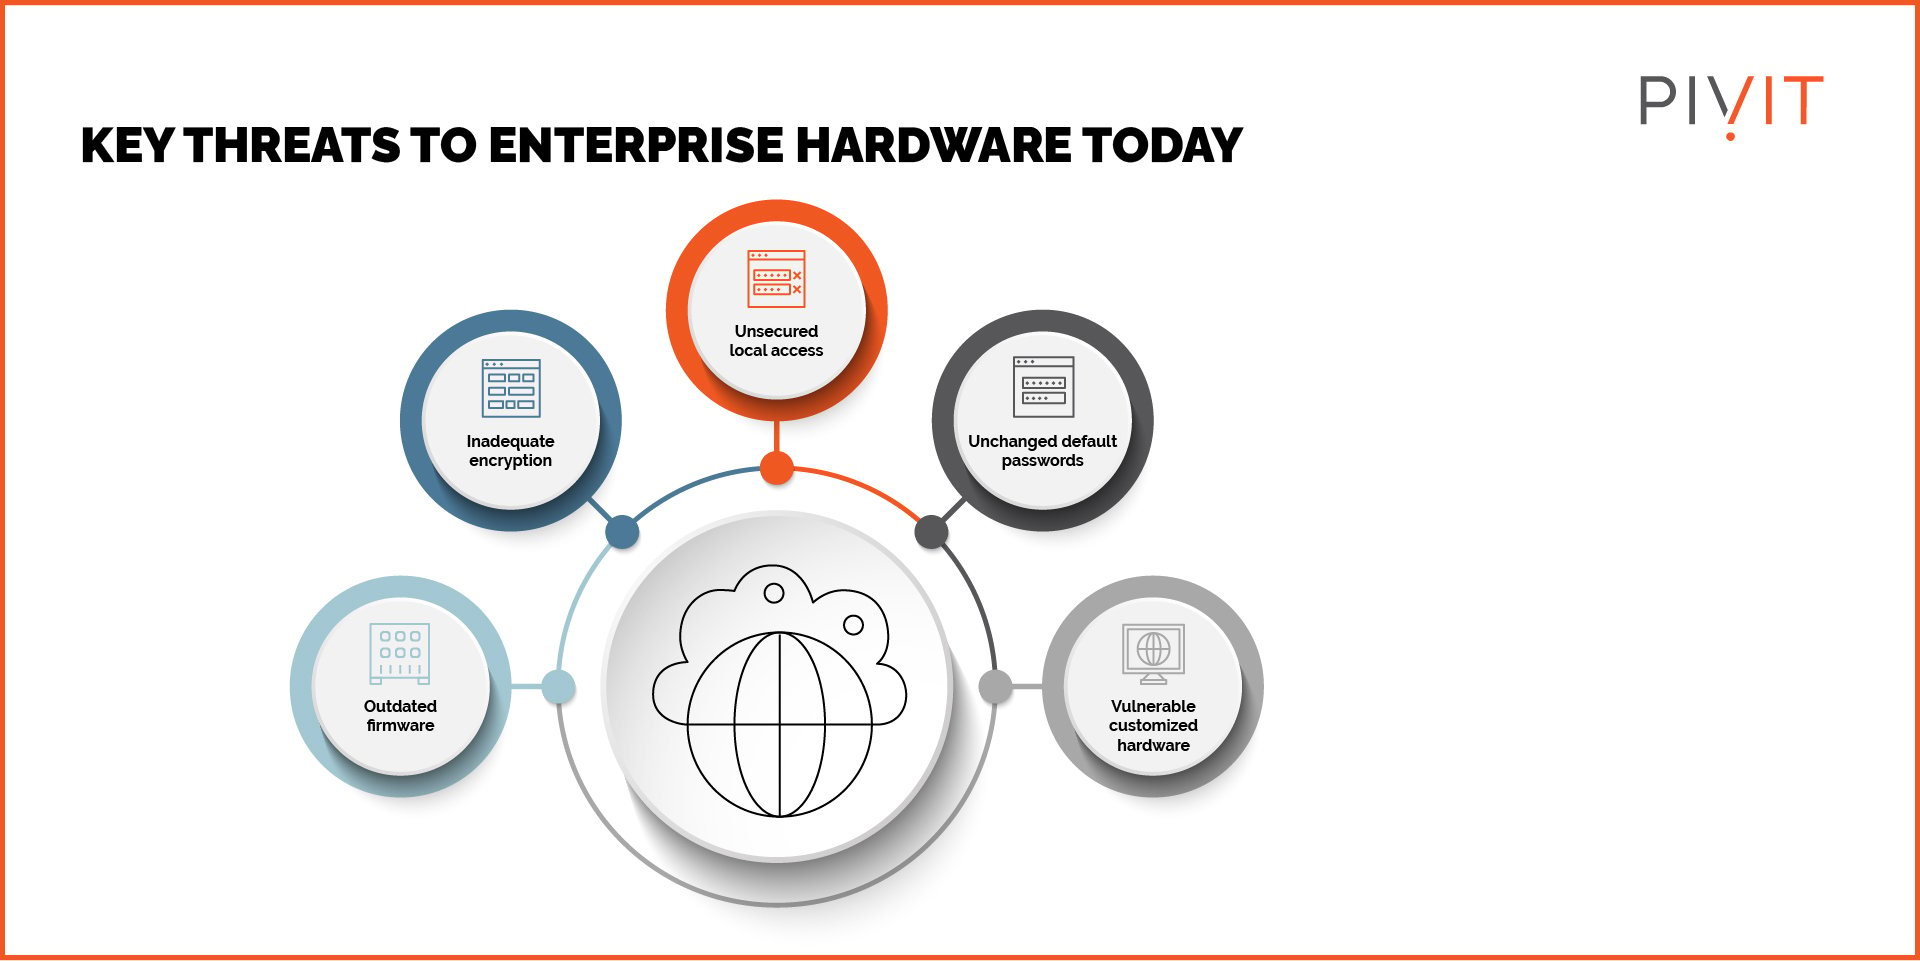 Key threats to enterprise hardware today